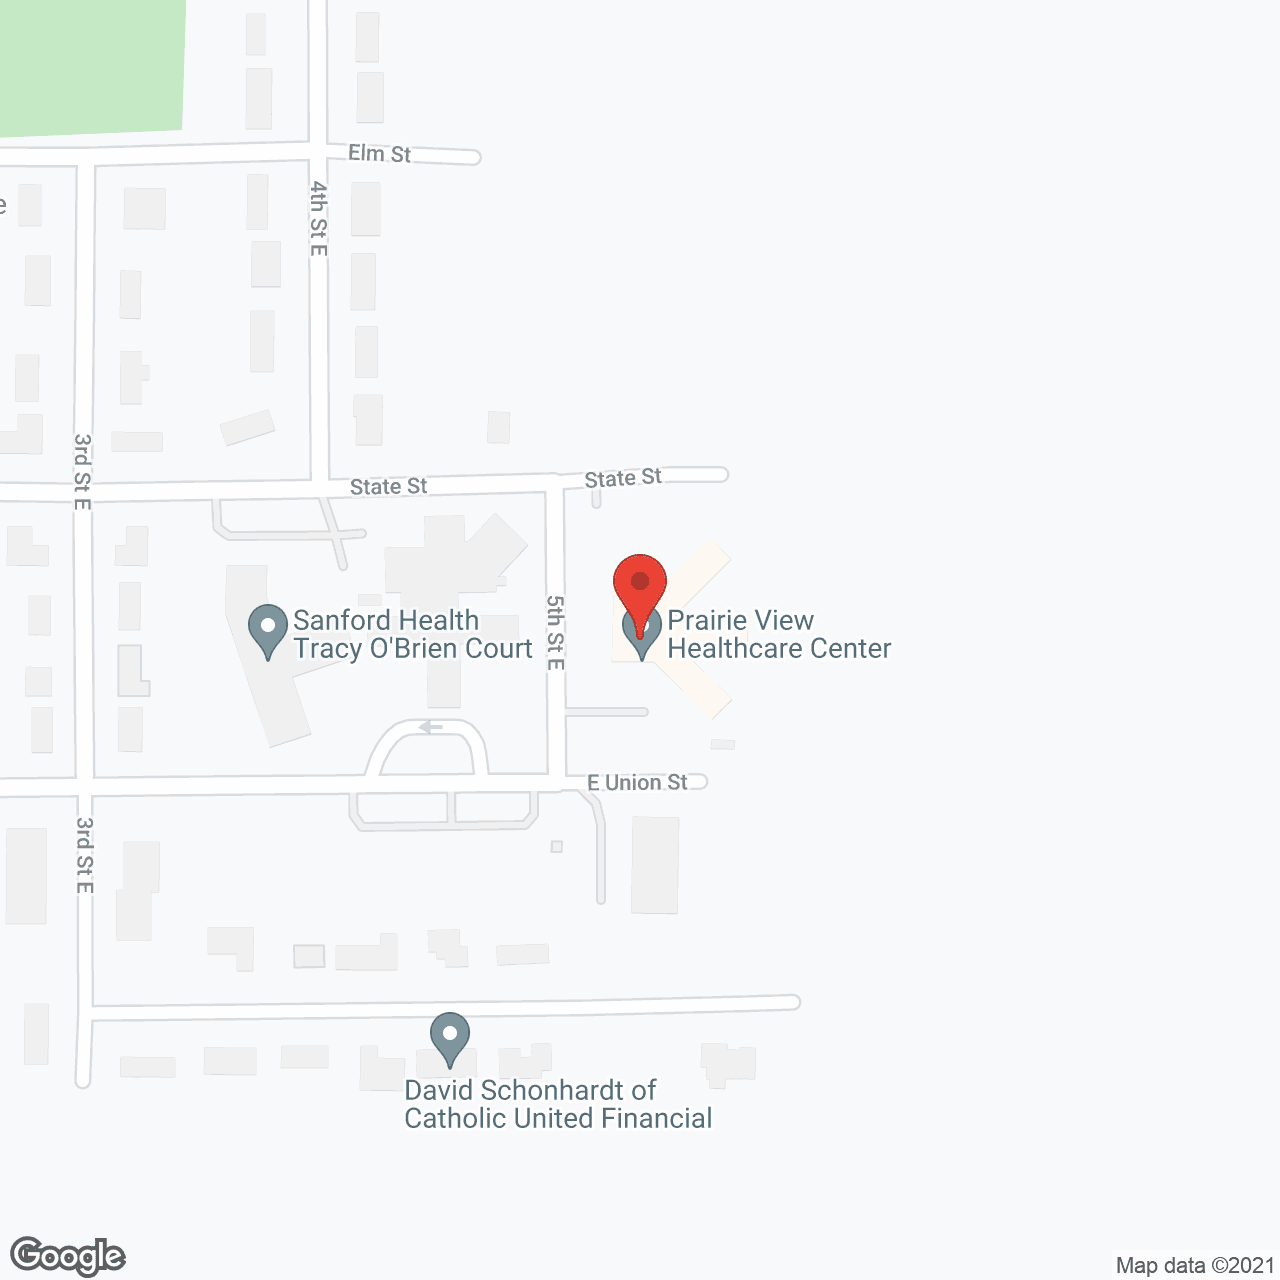 O Brien Court in google map